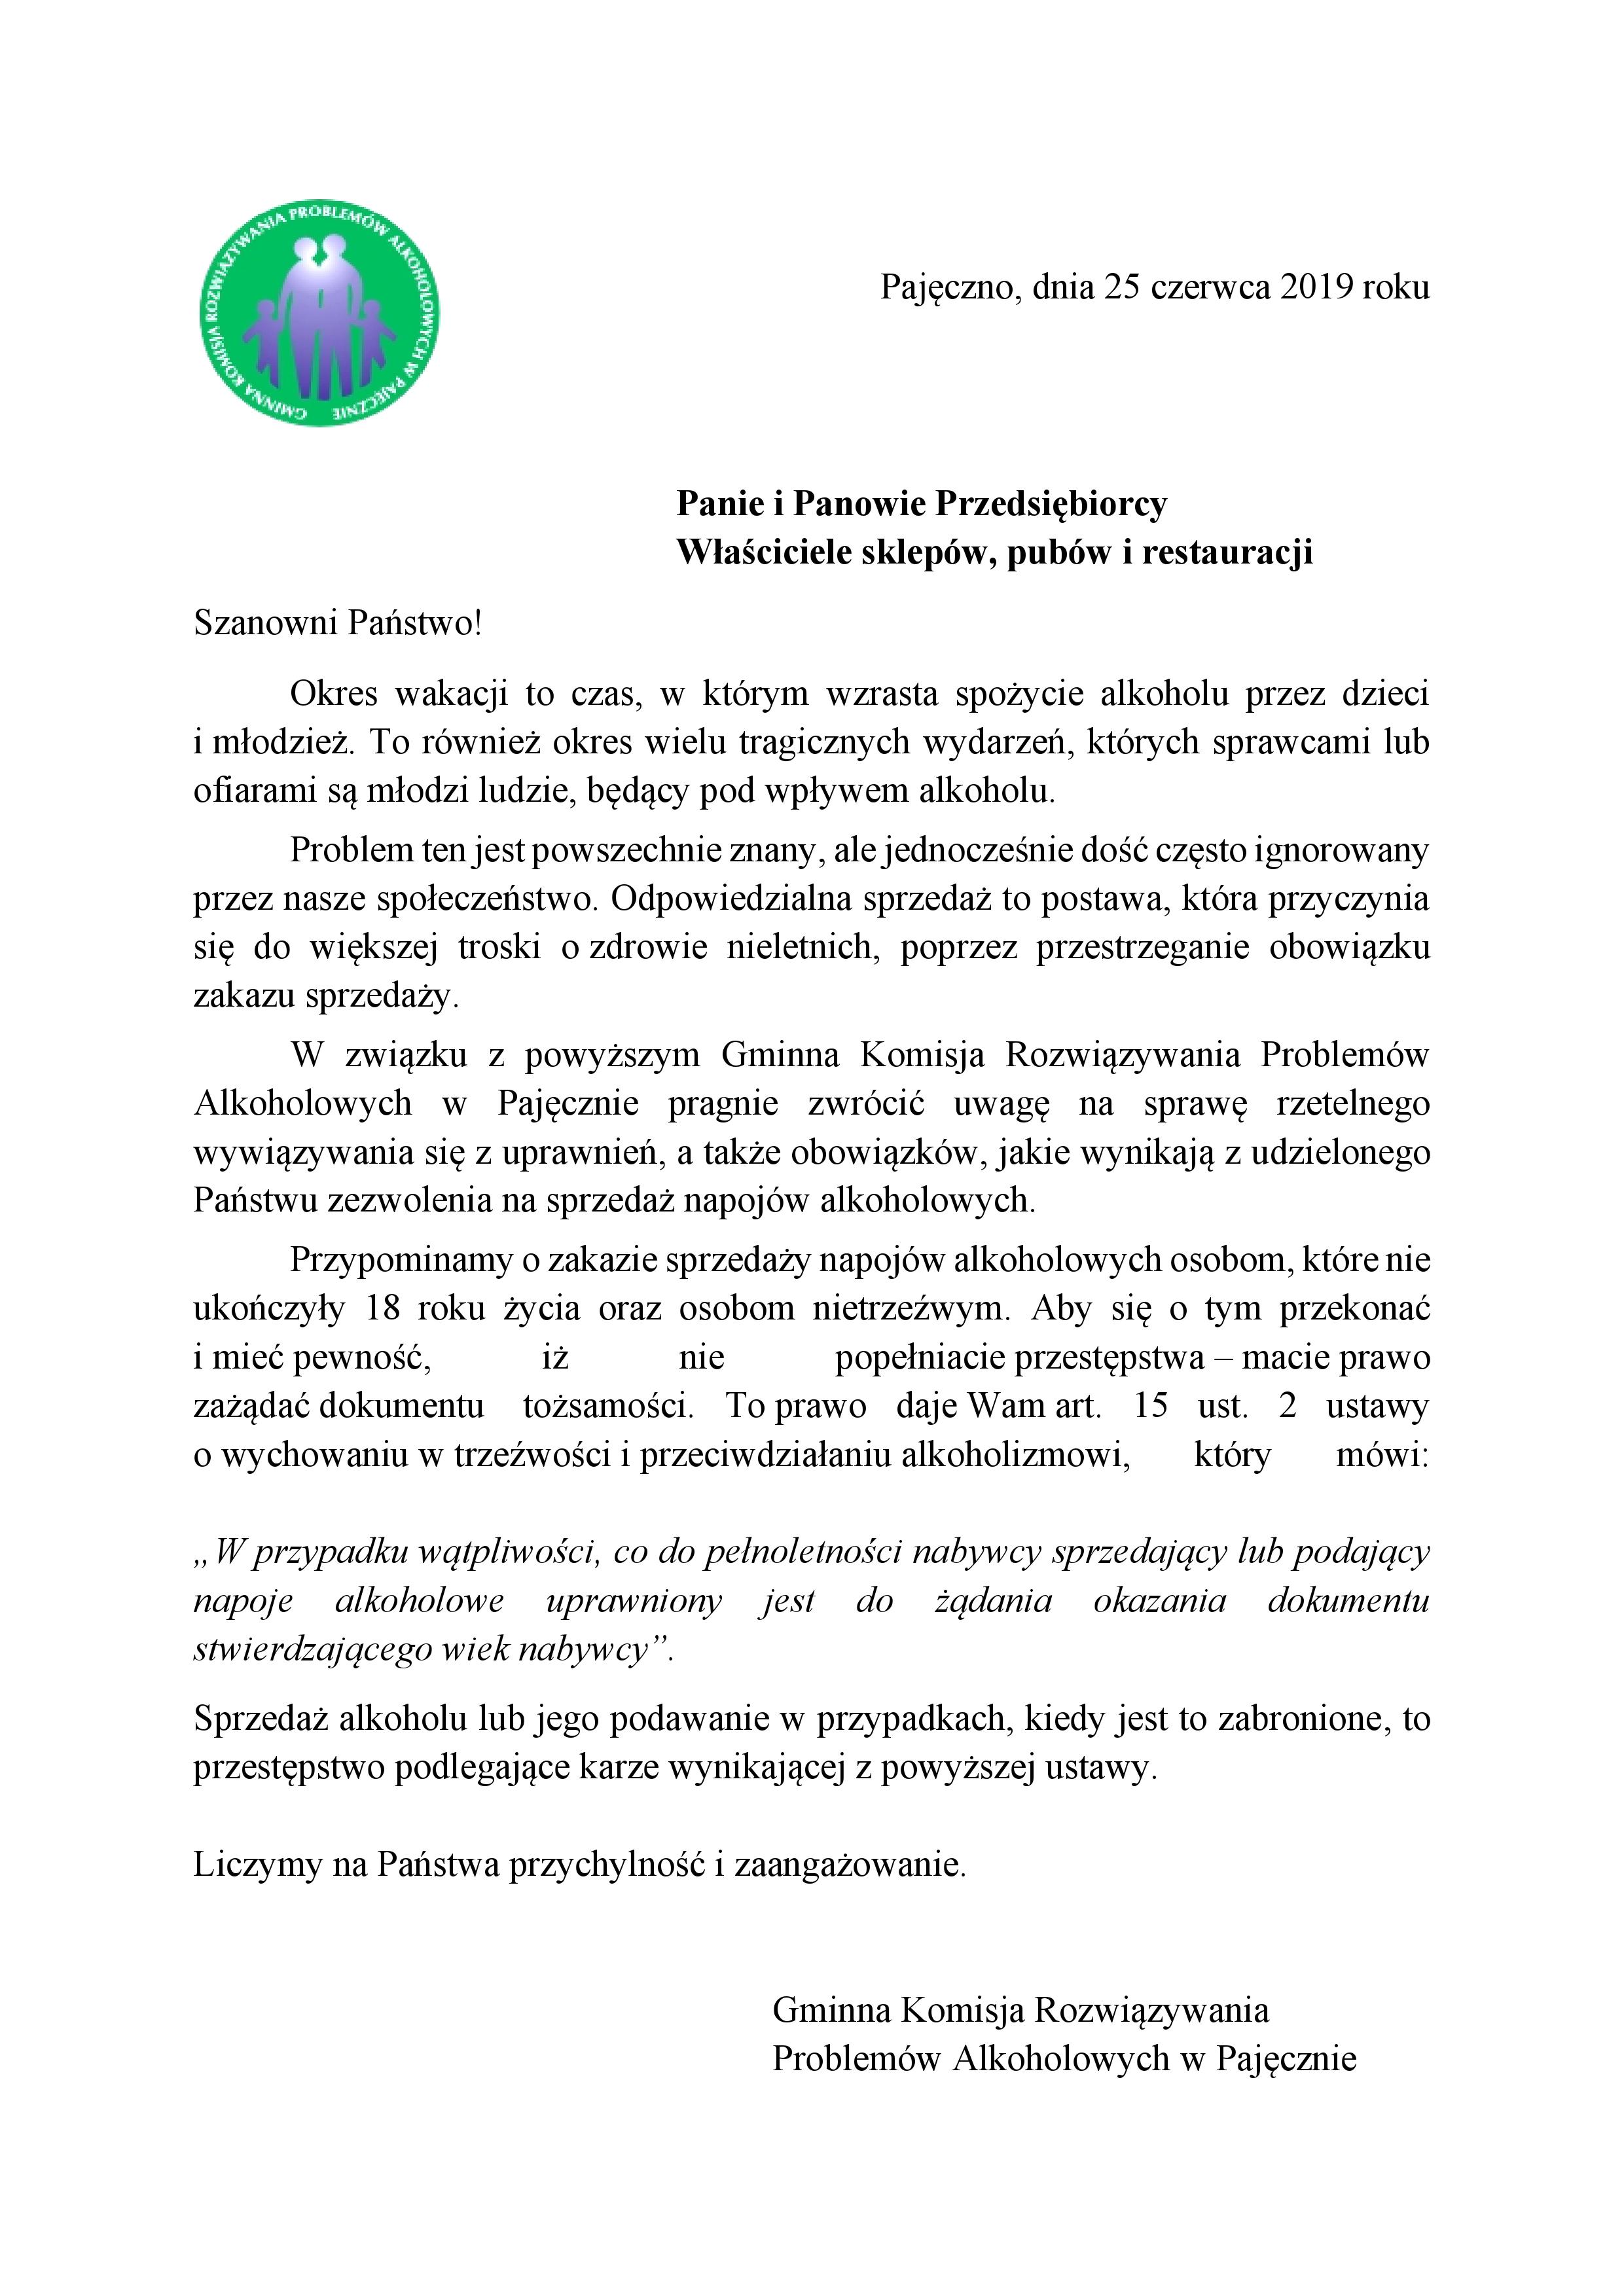 Gminna Komisja Rozwiązywania Problemów Alkoholowych w Pajęcznie apeluje!